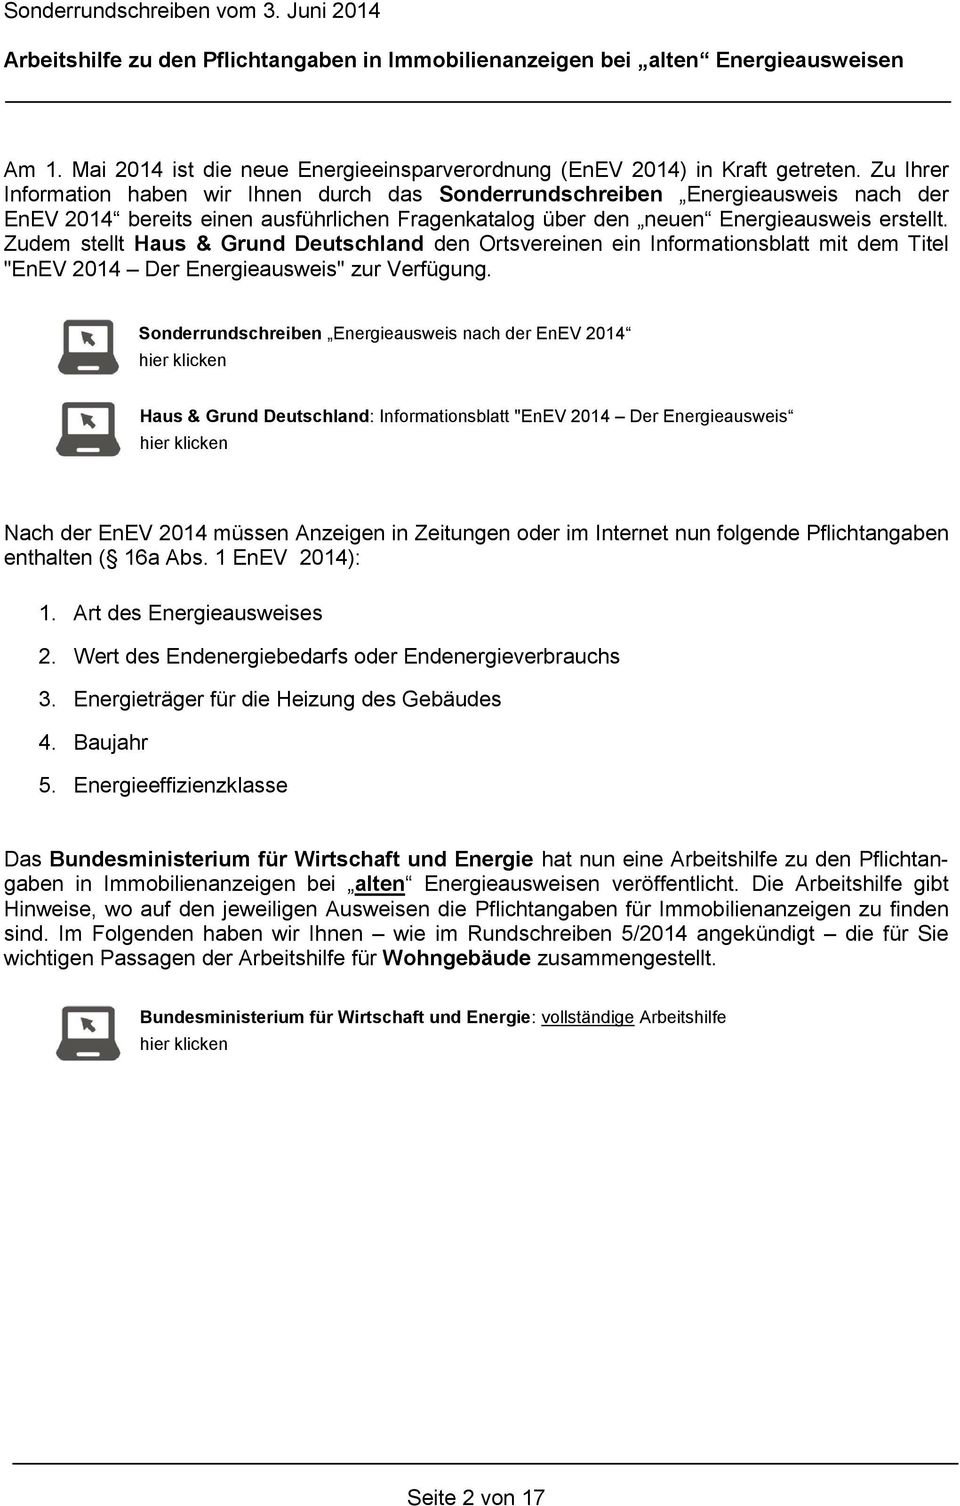 Zudem stellt Haus & Grund Deutschland den Ortsvereinen ein Informationsblatt mit dem Titel "EnEV 2014 Der Energieausweis" zur Verfügung.